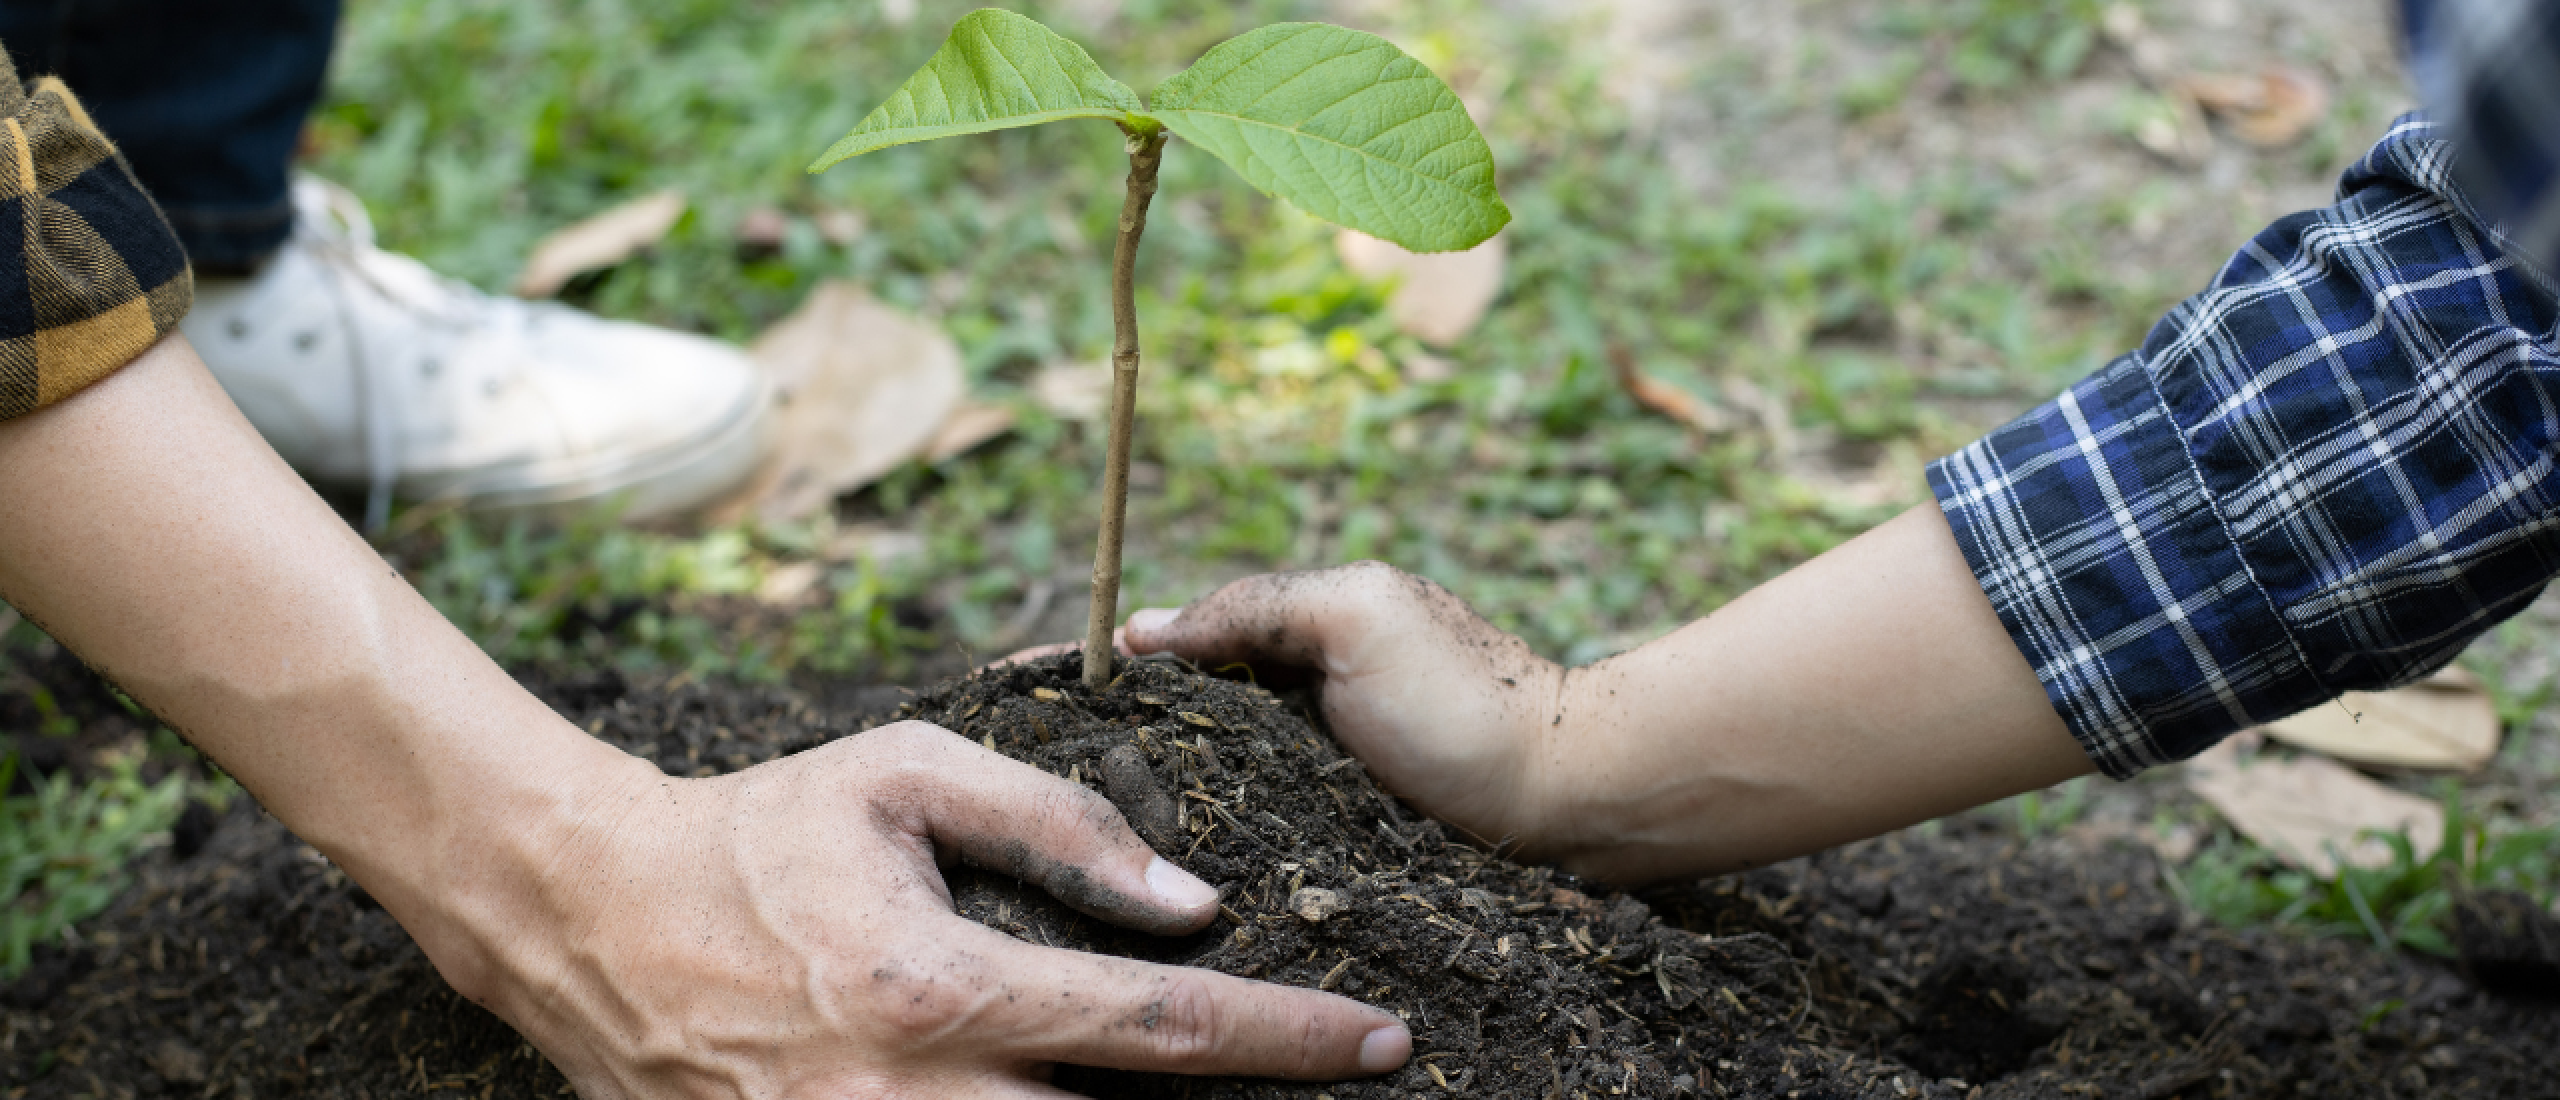 Een hand die een klein plantje verzorgt, wat groei en ontwikkeling met beperkte middelen symboliseert.